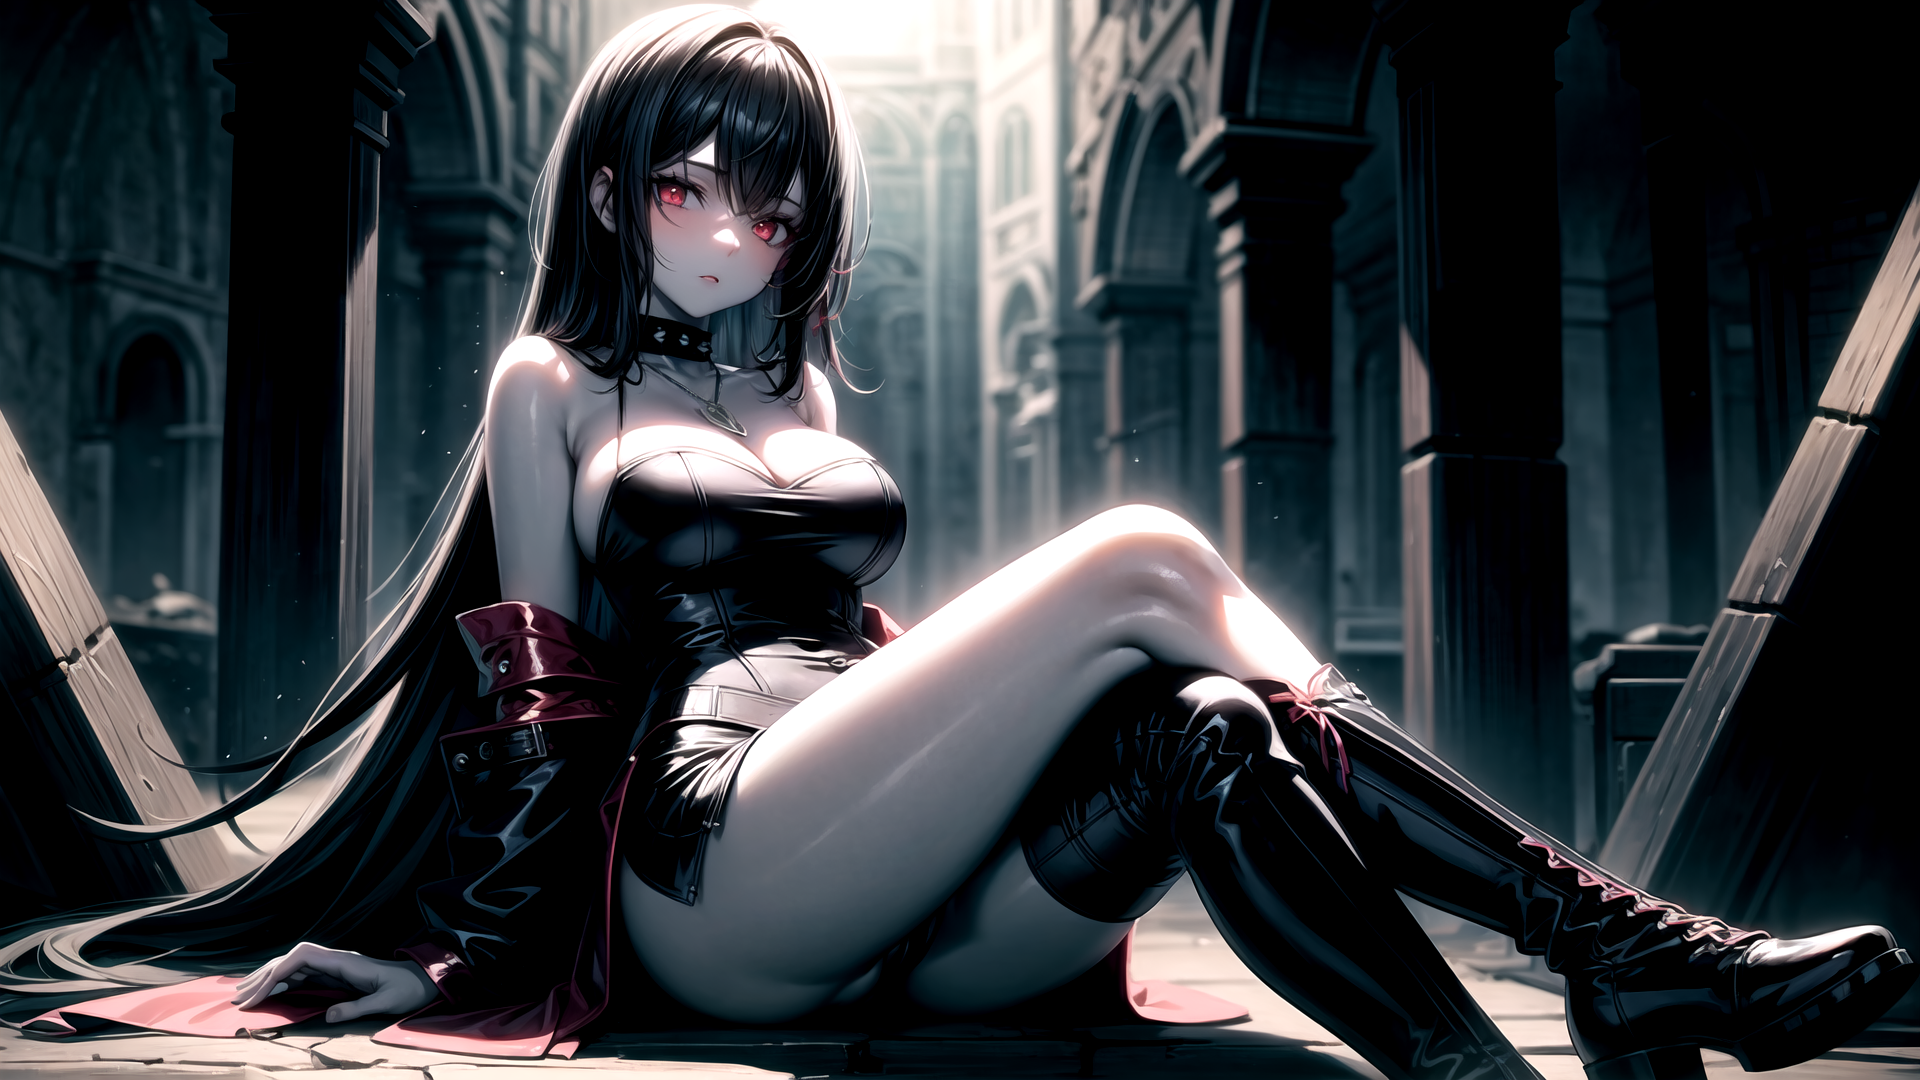 Dark-anime-girl-1440x900 by loucas1oc on DeviantArt